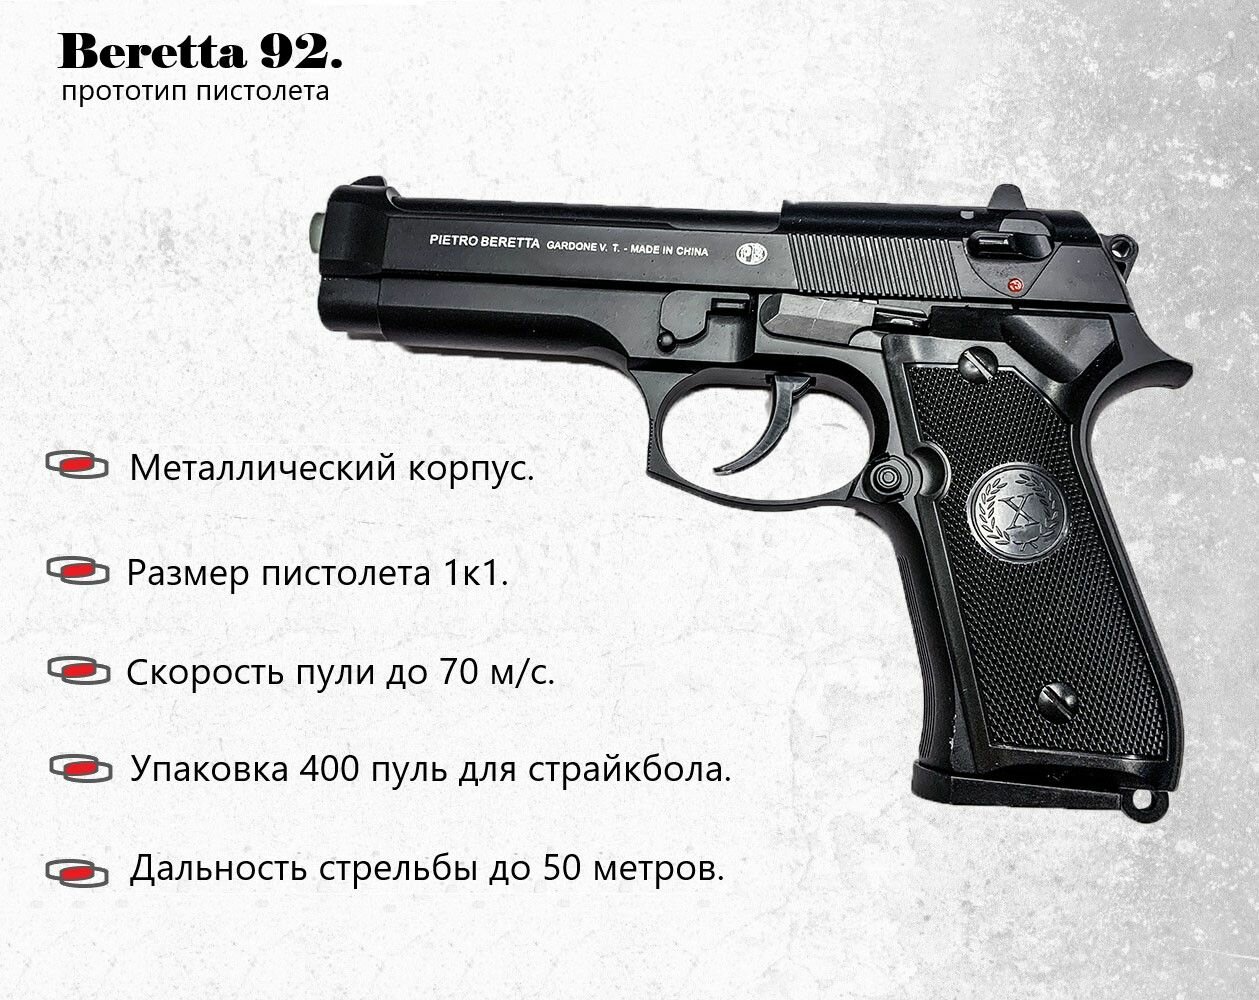 Пневматический пистолет металлический оружие для страйкбола Smart К117 Модель Beretta М9 пружинный. Упаковка 400 шаров в комплекте.